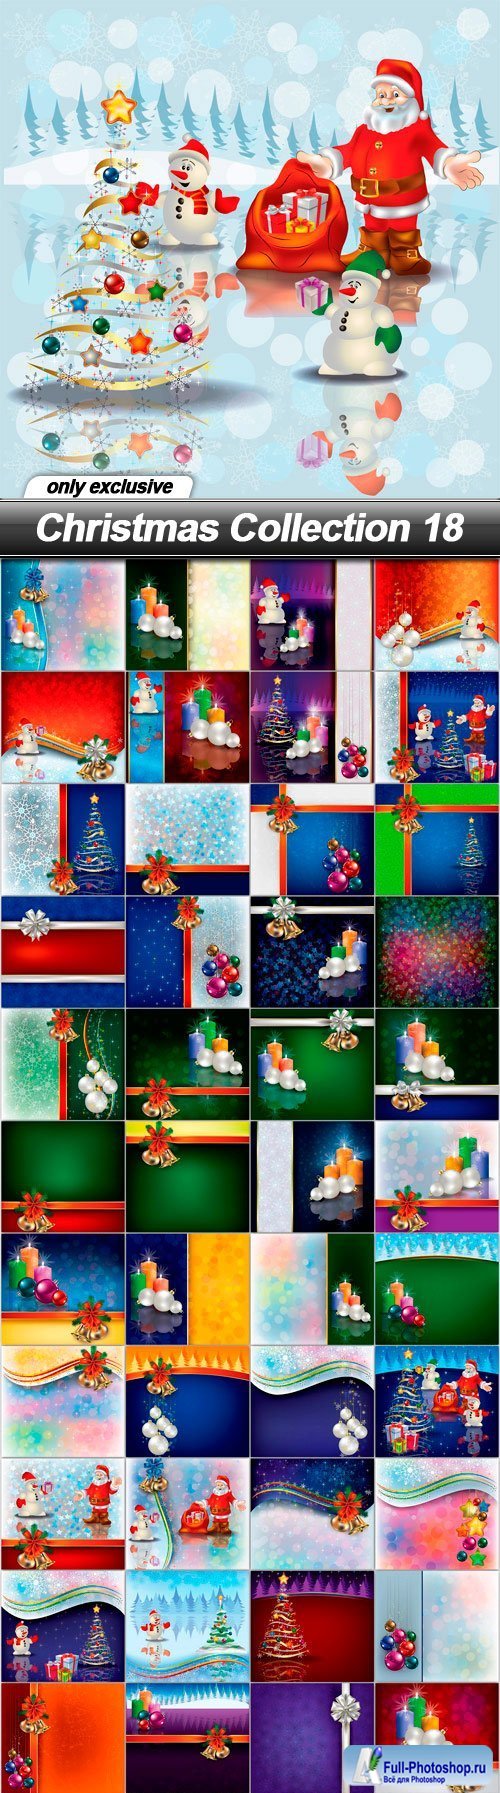 Christmas Collection 18 - 48 EPS